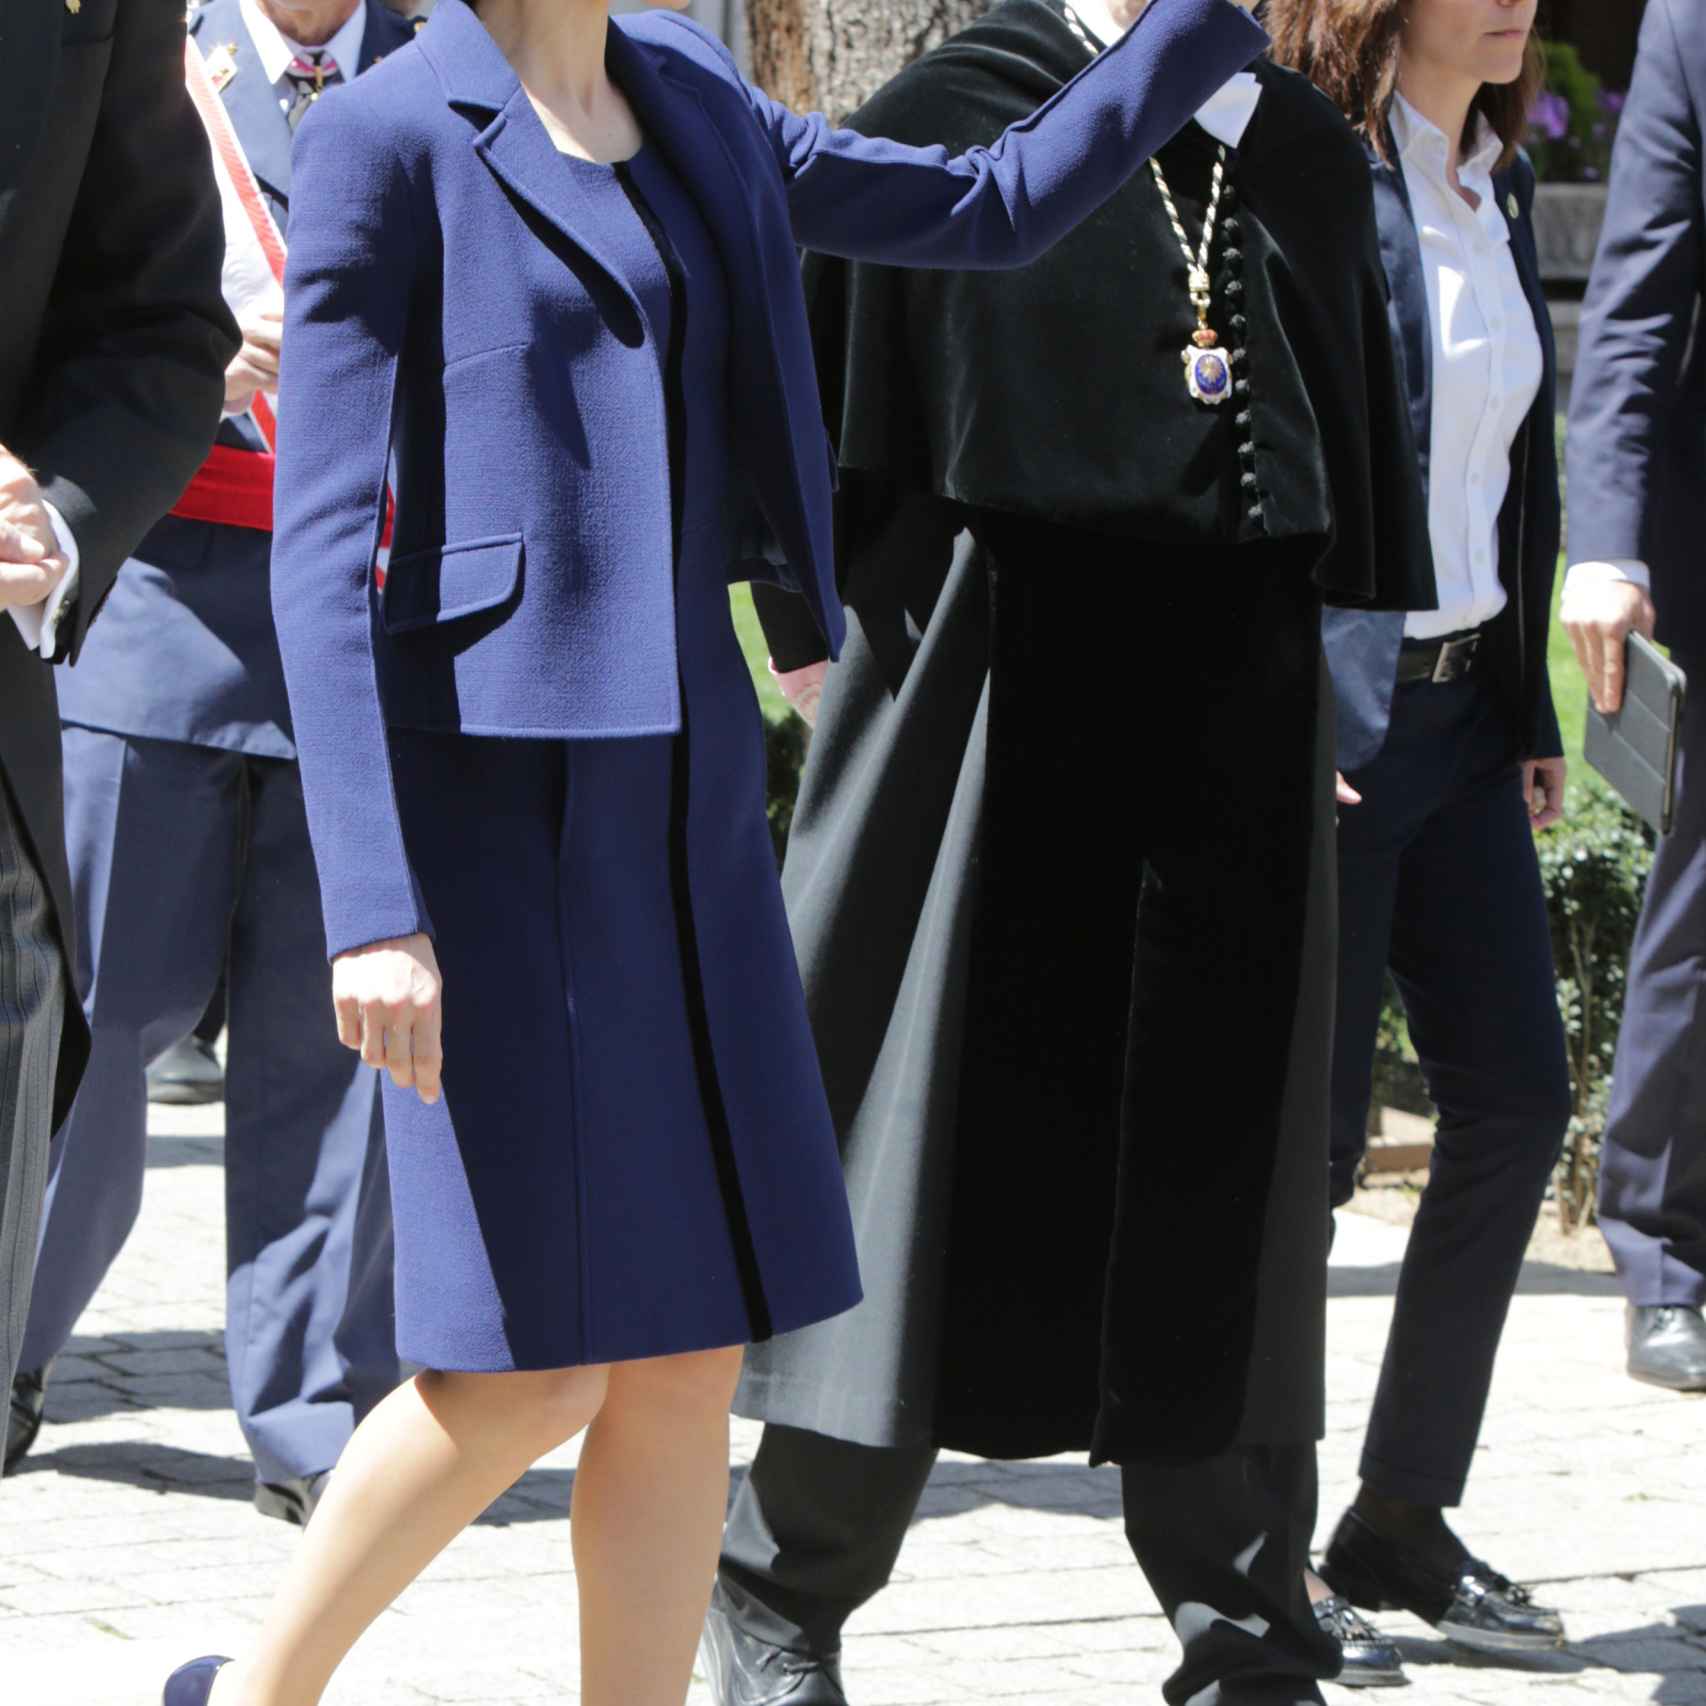 La Reina ya lució este traje el Día de la Fiesta Nacional en 2015